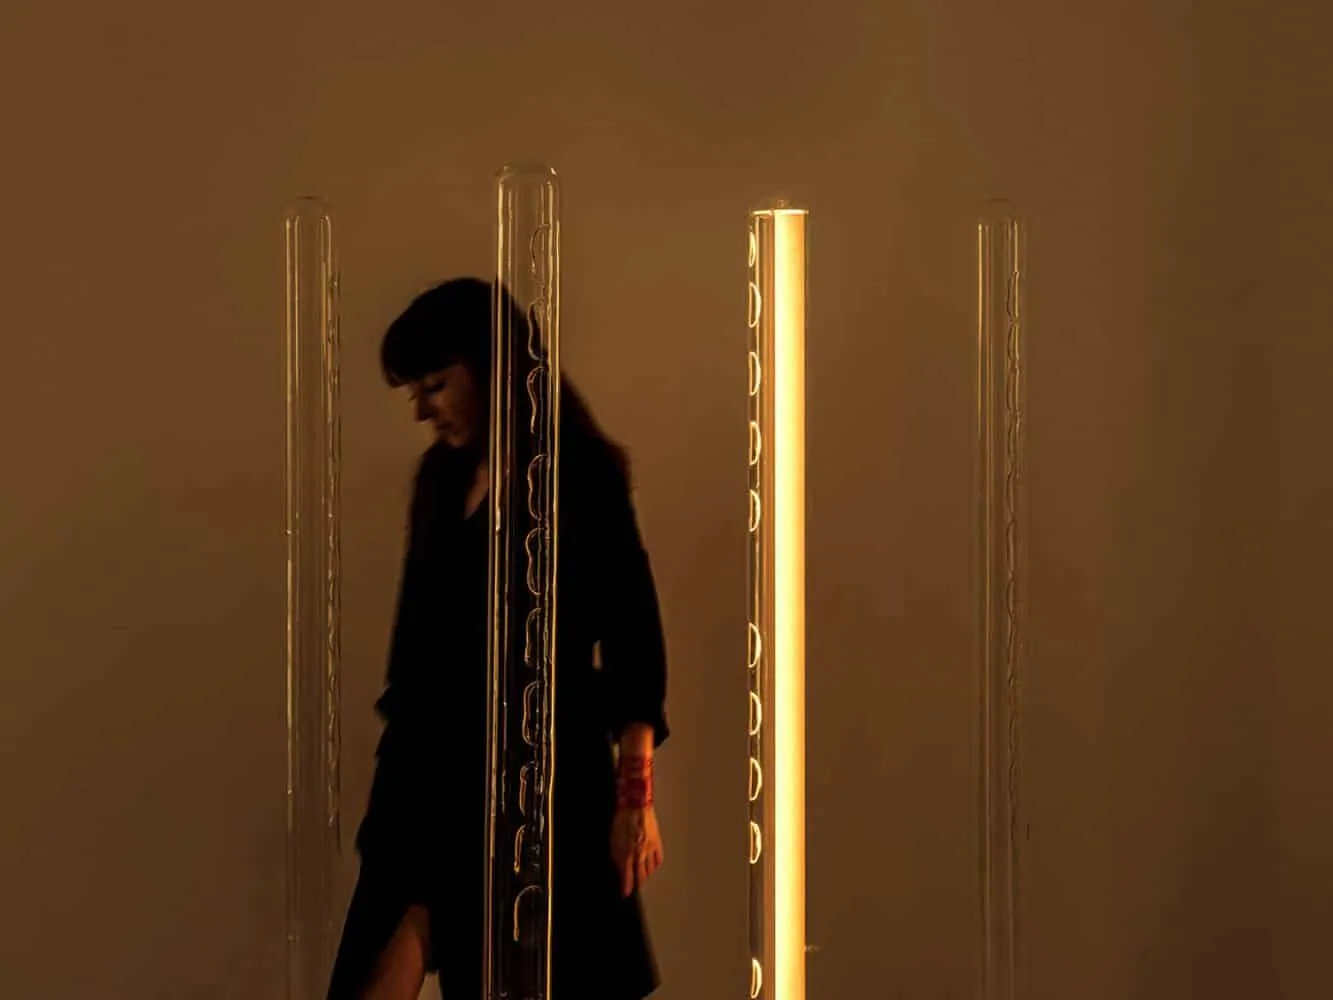 No Title Lamp. Mayice. Foto: Knu Kim. Diseño español. Nominado Premios ROOM. Categoría Identidad Creativa